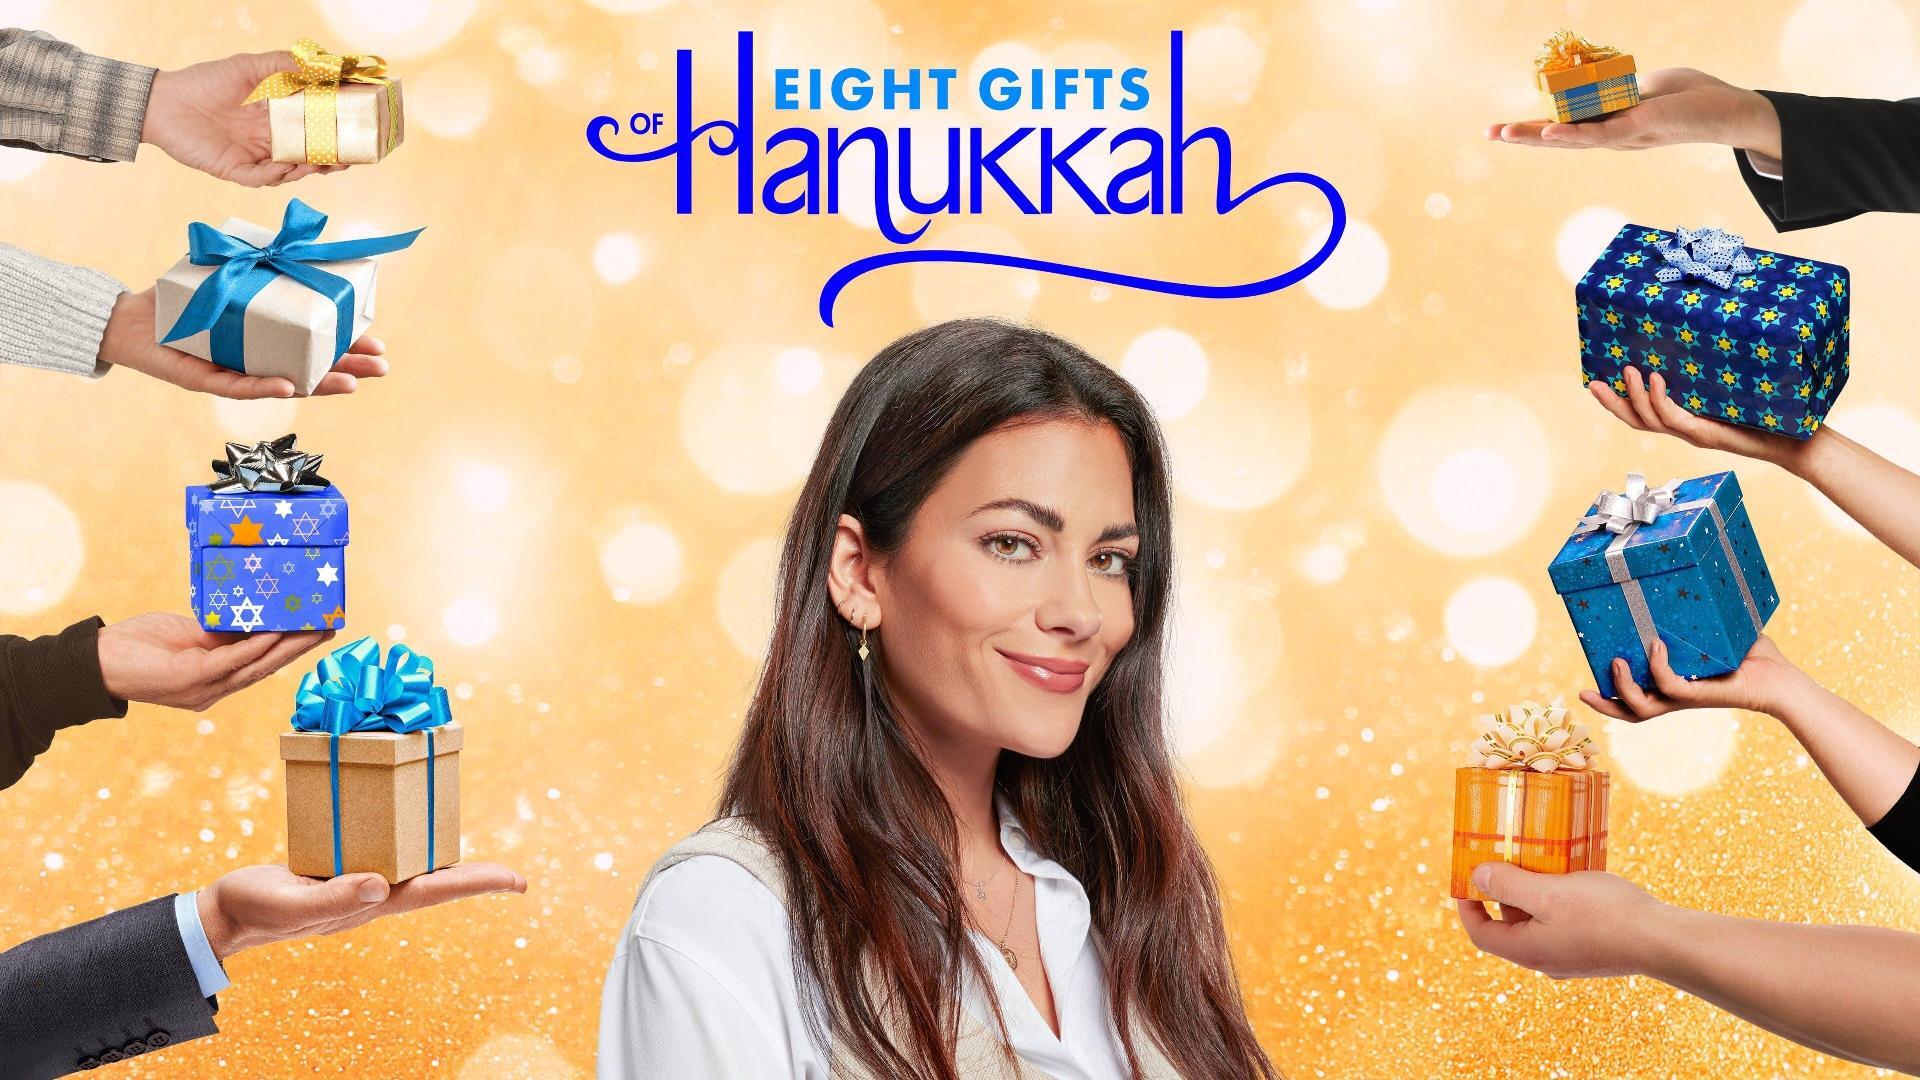 ჰანუკას რვა საჩუქარი / Eight Gifts of Hanukkah